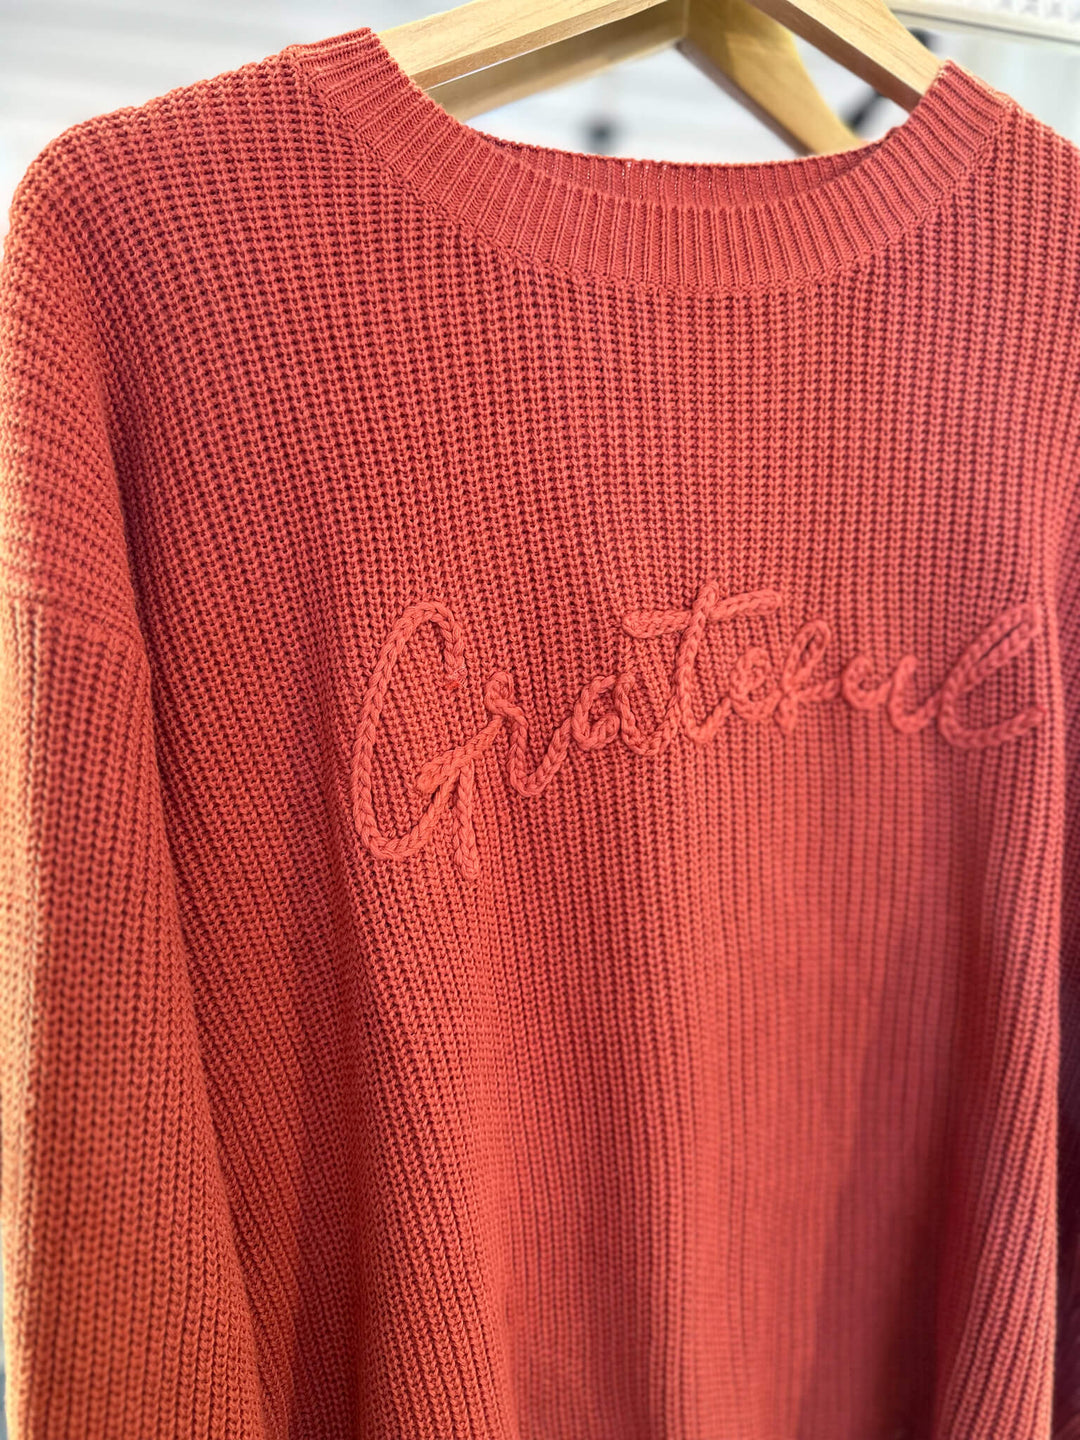 Grateful Knit Sweater in Rust